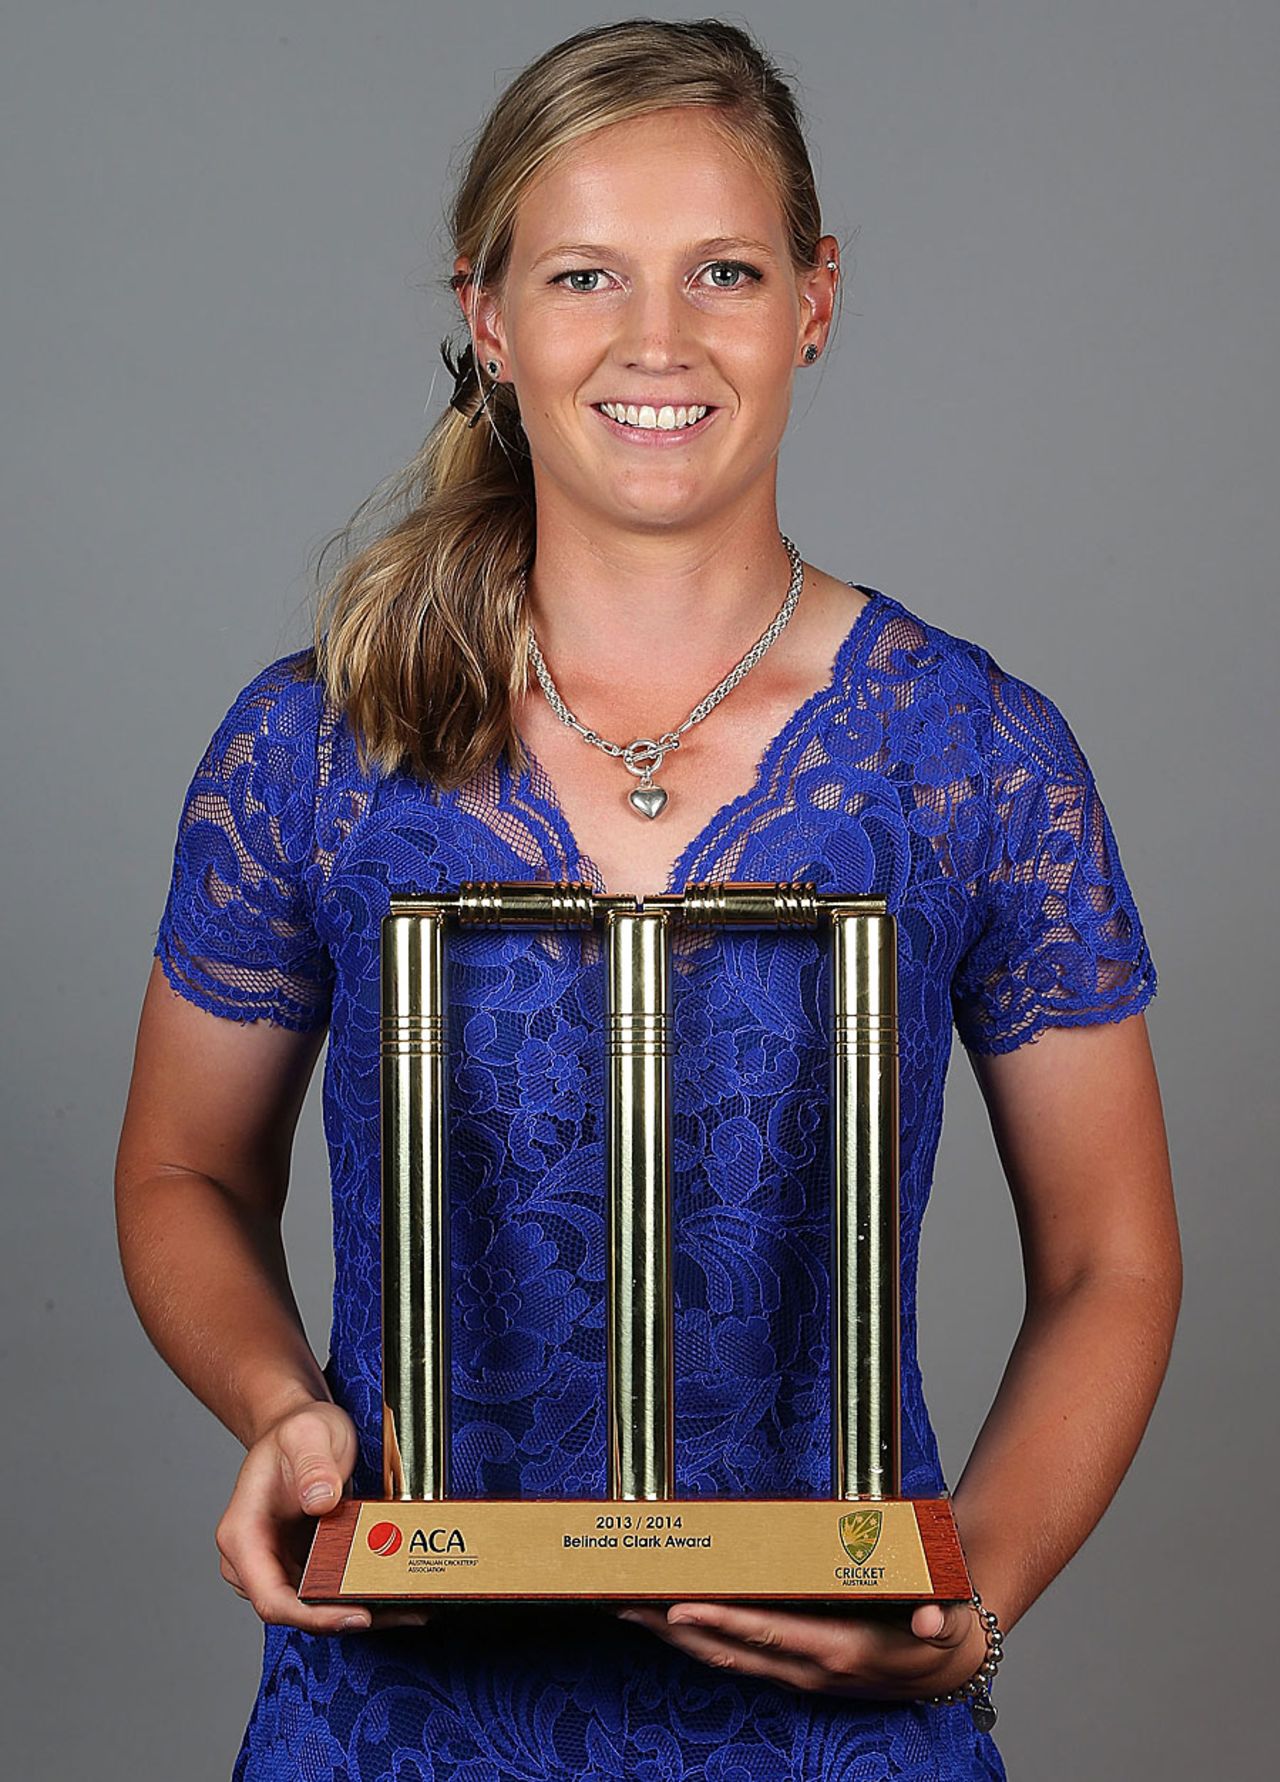 Meg Lanning won the Belinda Clark Award, Sydney, January 20, 2014